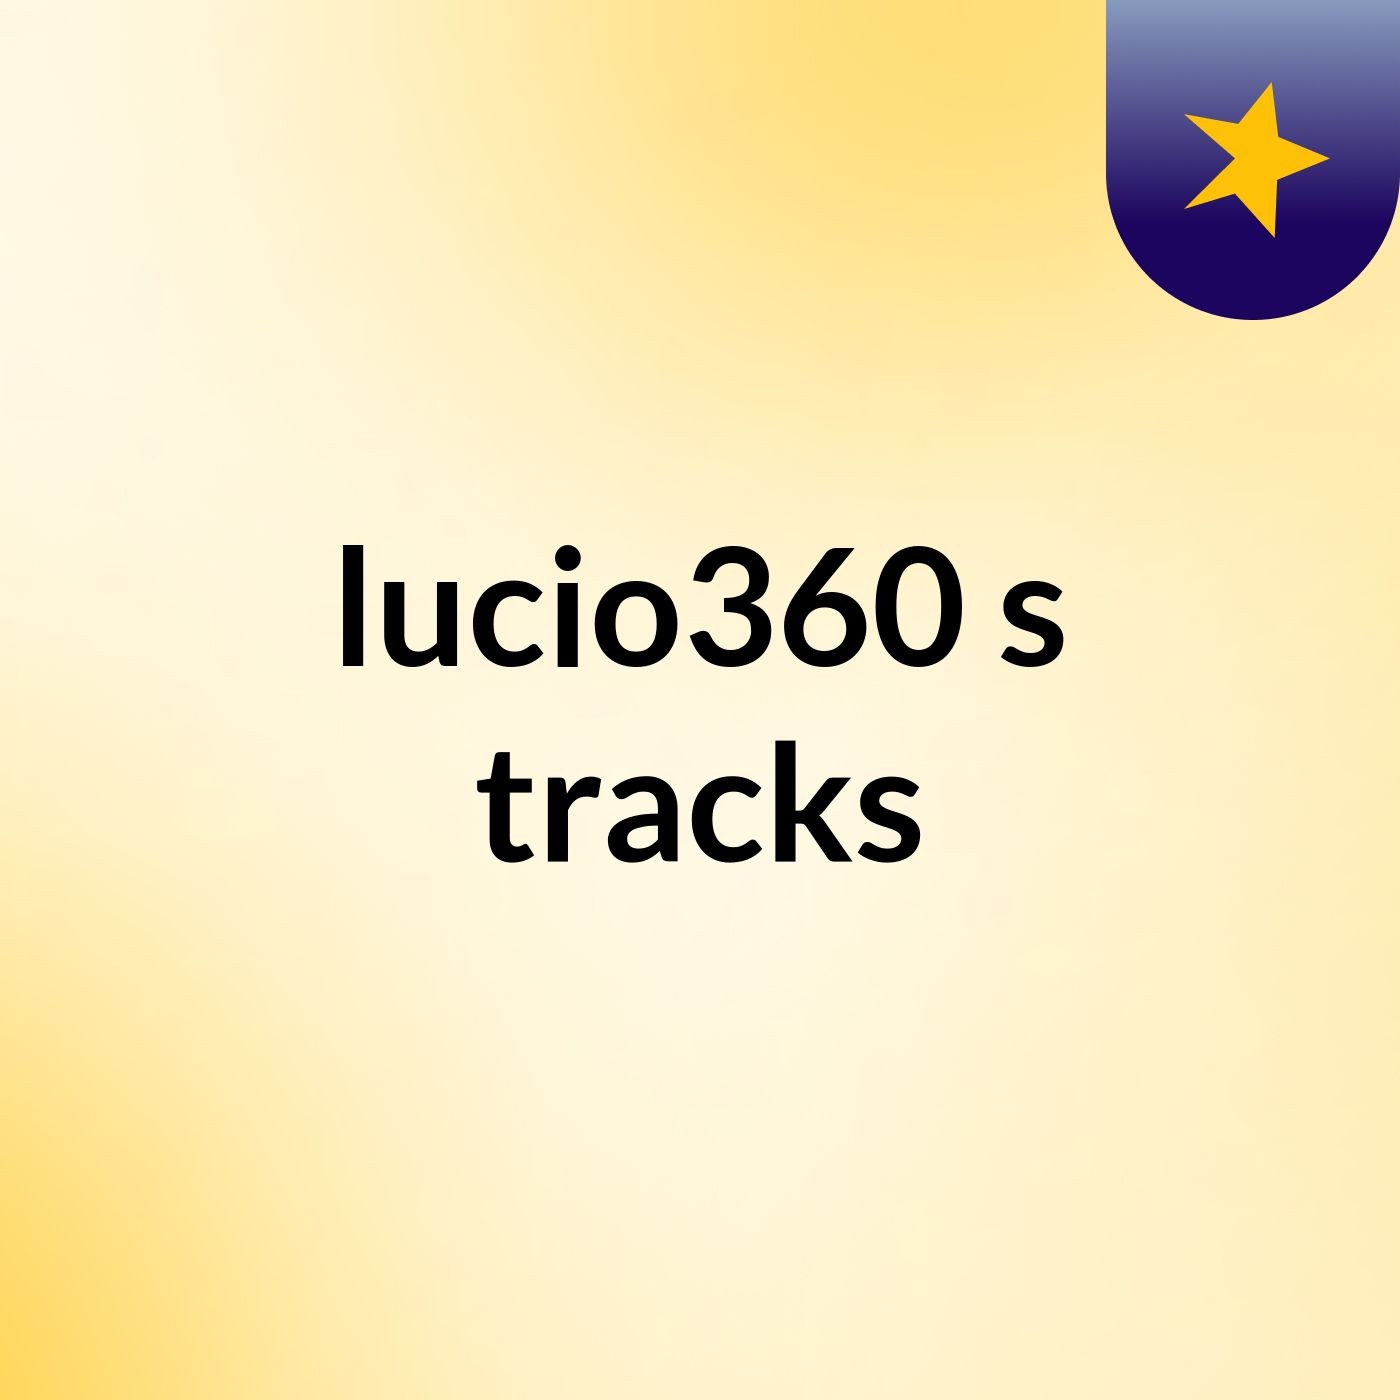 lucio360's tracks